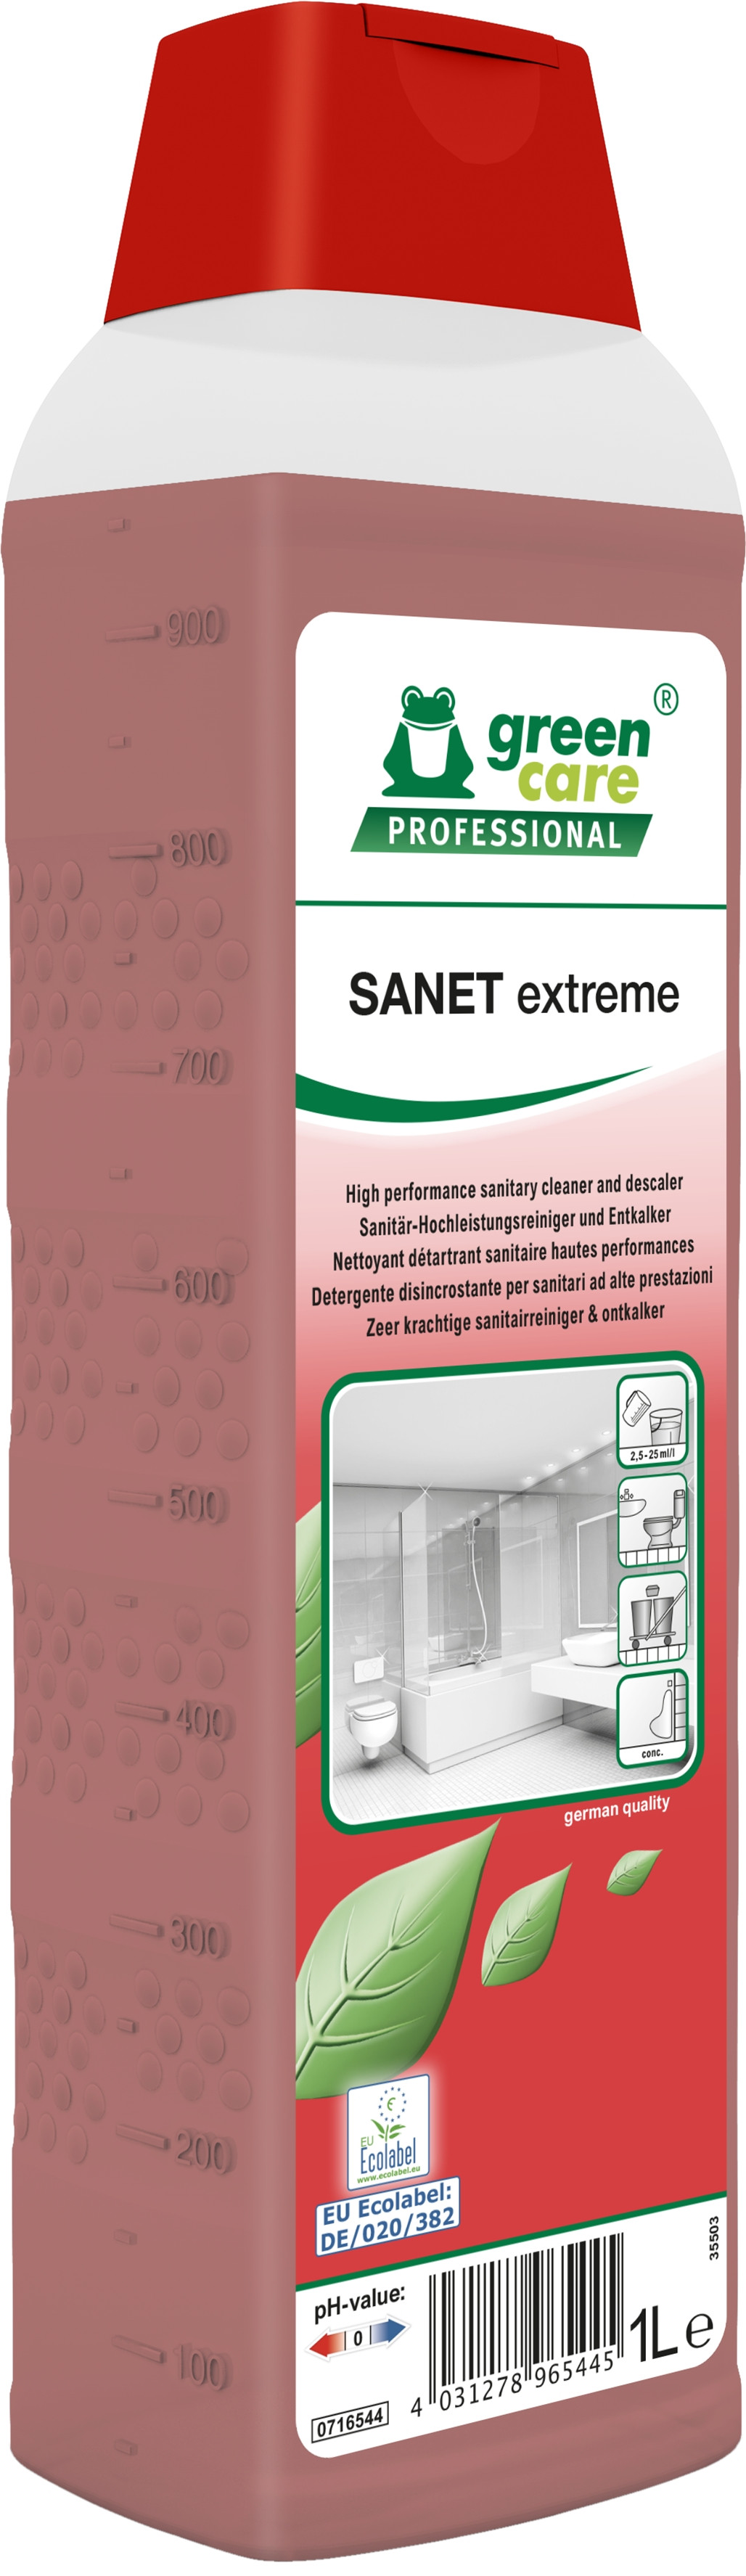 Green Care Prof Sanet Extreme 10 x 1 l Kalkfjerner med parfume (716544)